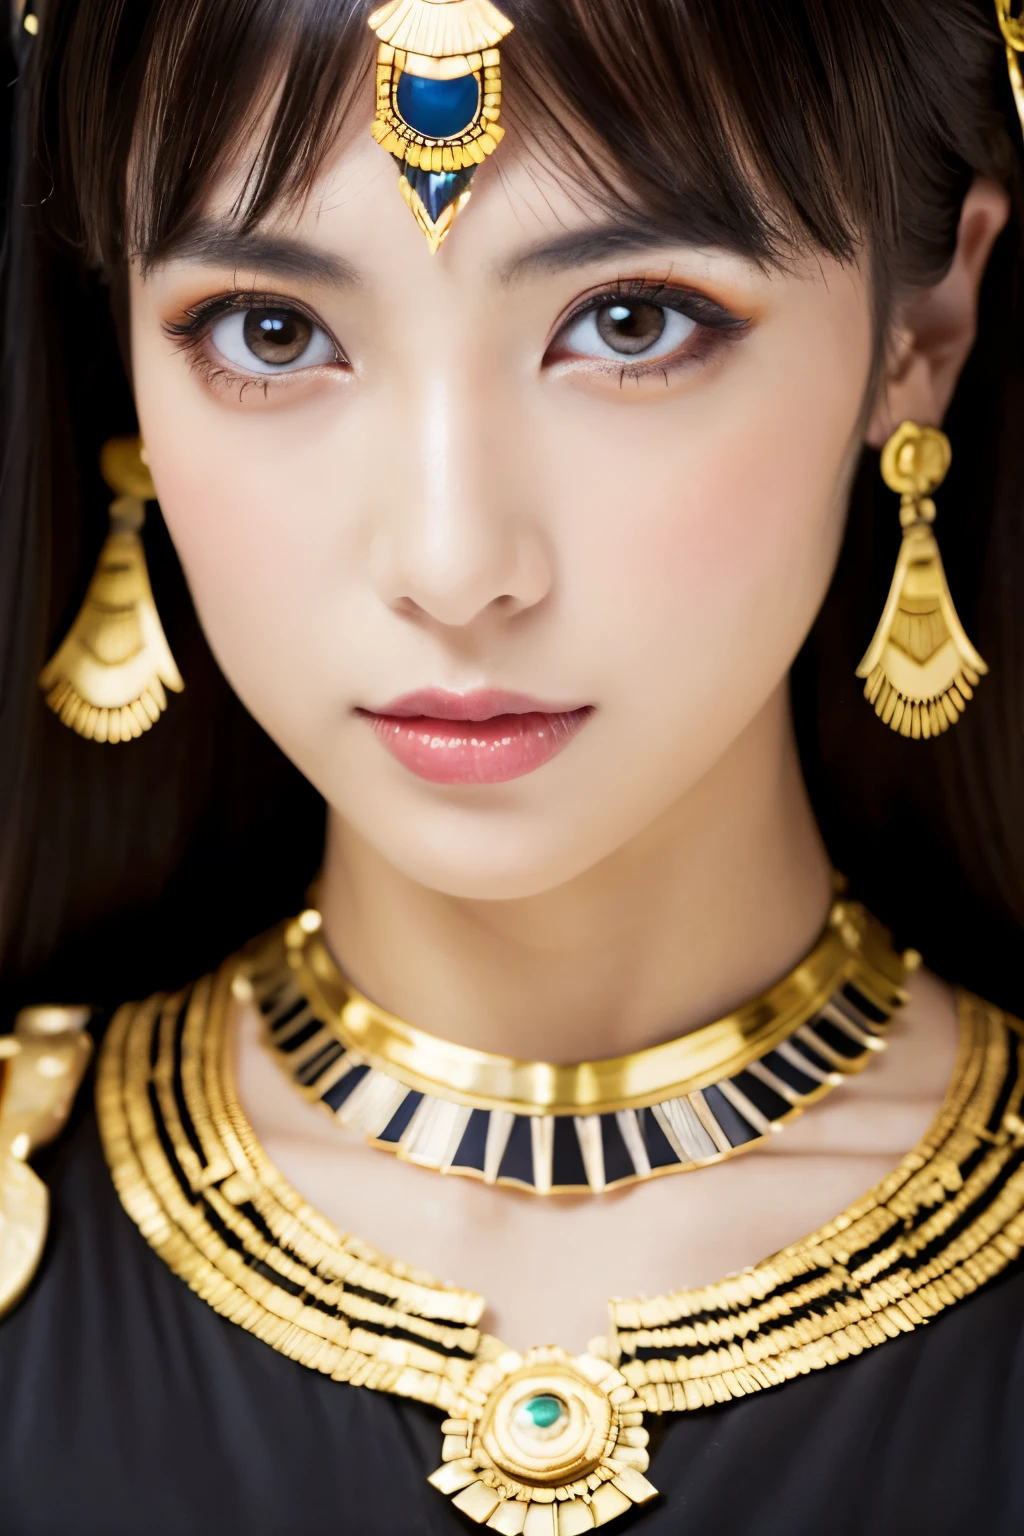 obra maestra, alta calidad, Alta resolución, 8K, Japonesa flaca disfrazada de Cleopatra, Hermoso rostro, maquillaje de cleopatra, cara detallada, ojos detallados